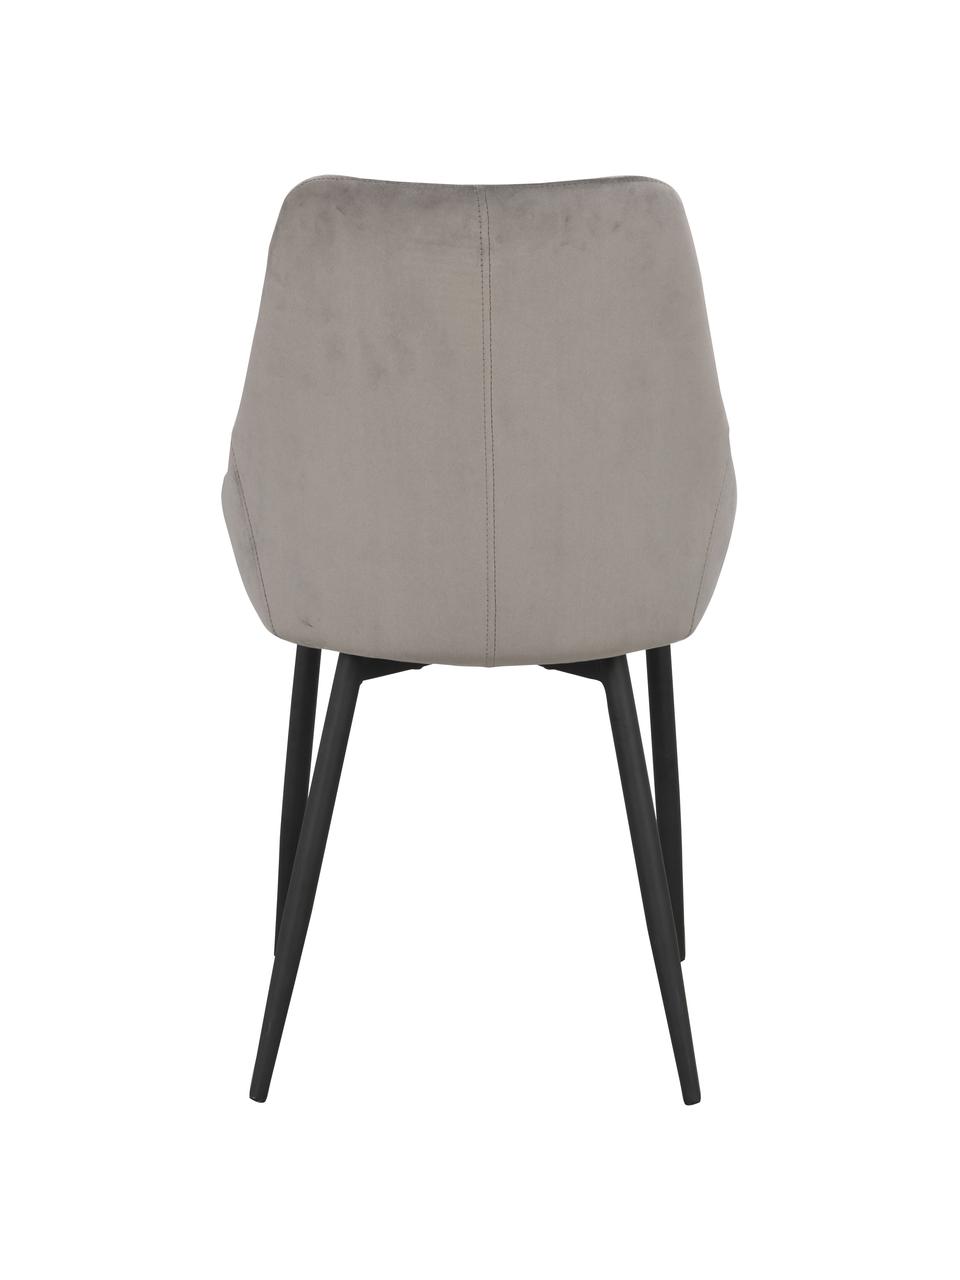 Krzesło tapicerowane z aksamitu Alberton, 2 szt., Tapicerka: 100% aksamit poliestrowy, Nogi: metal lakierowany, Szary aksamit, S 59 x G 62 cm